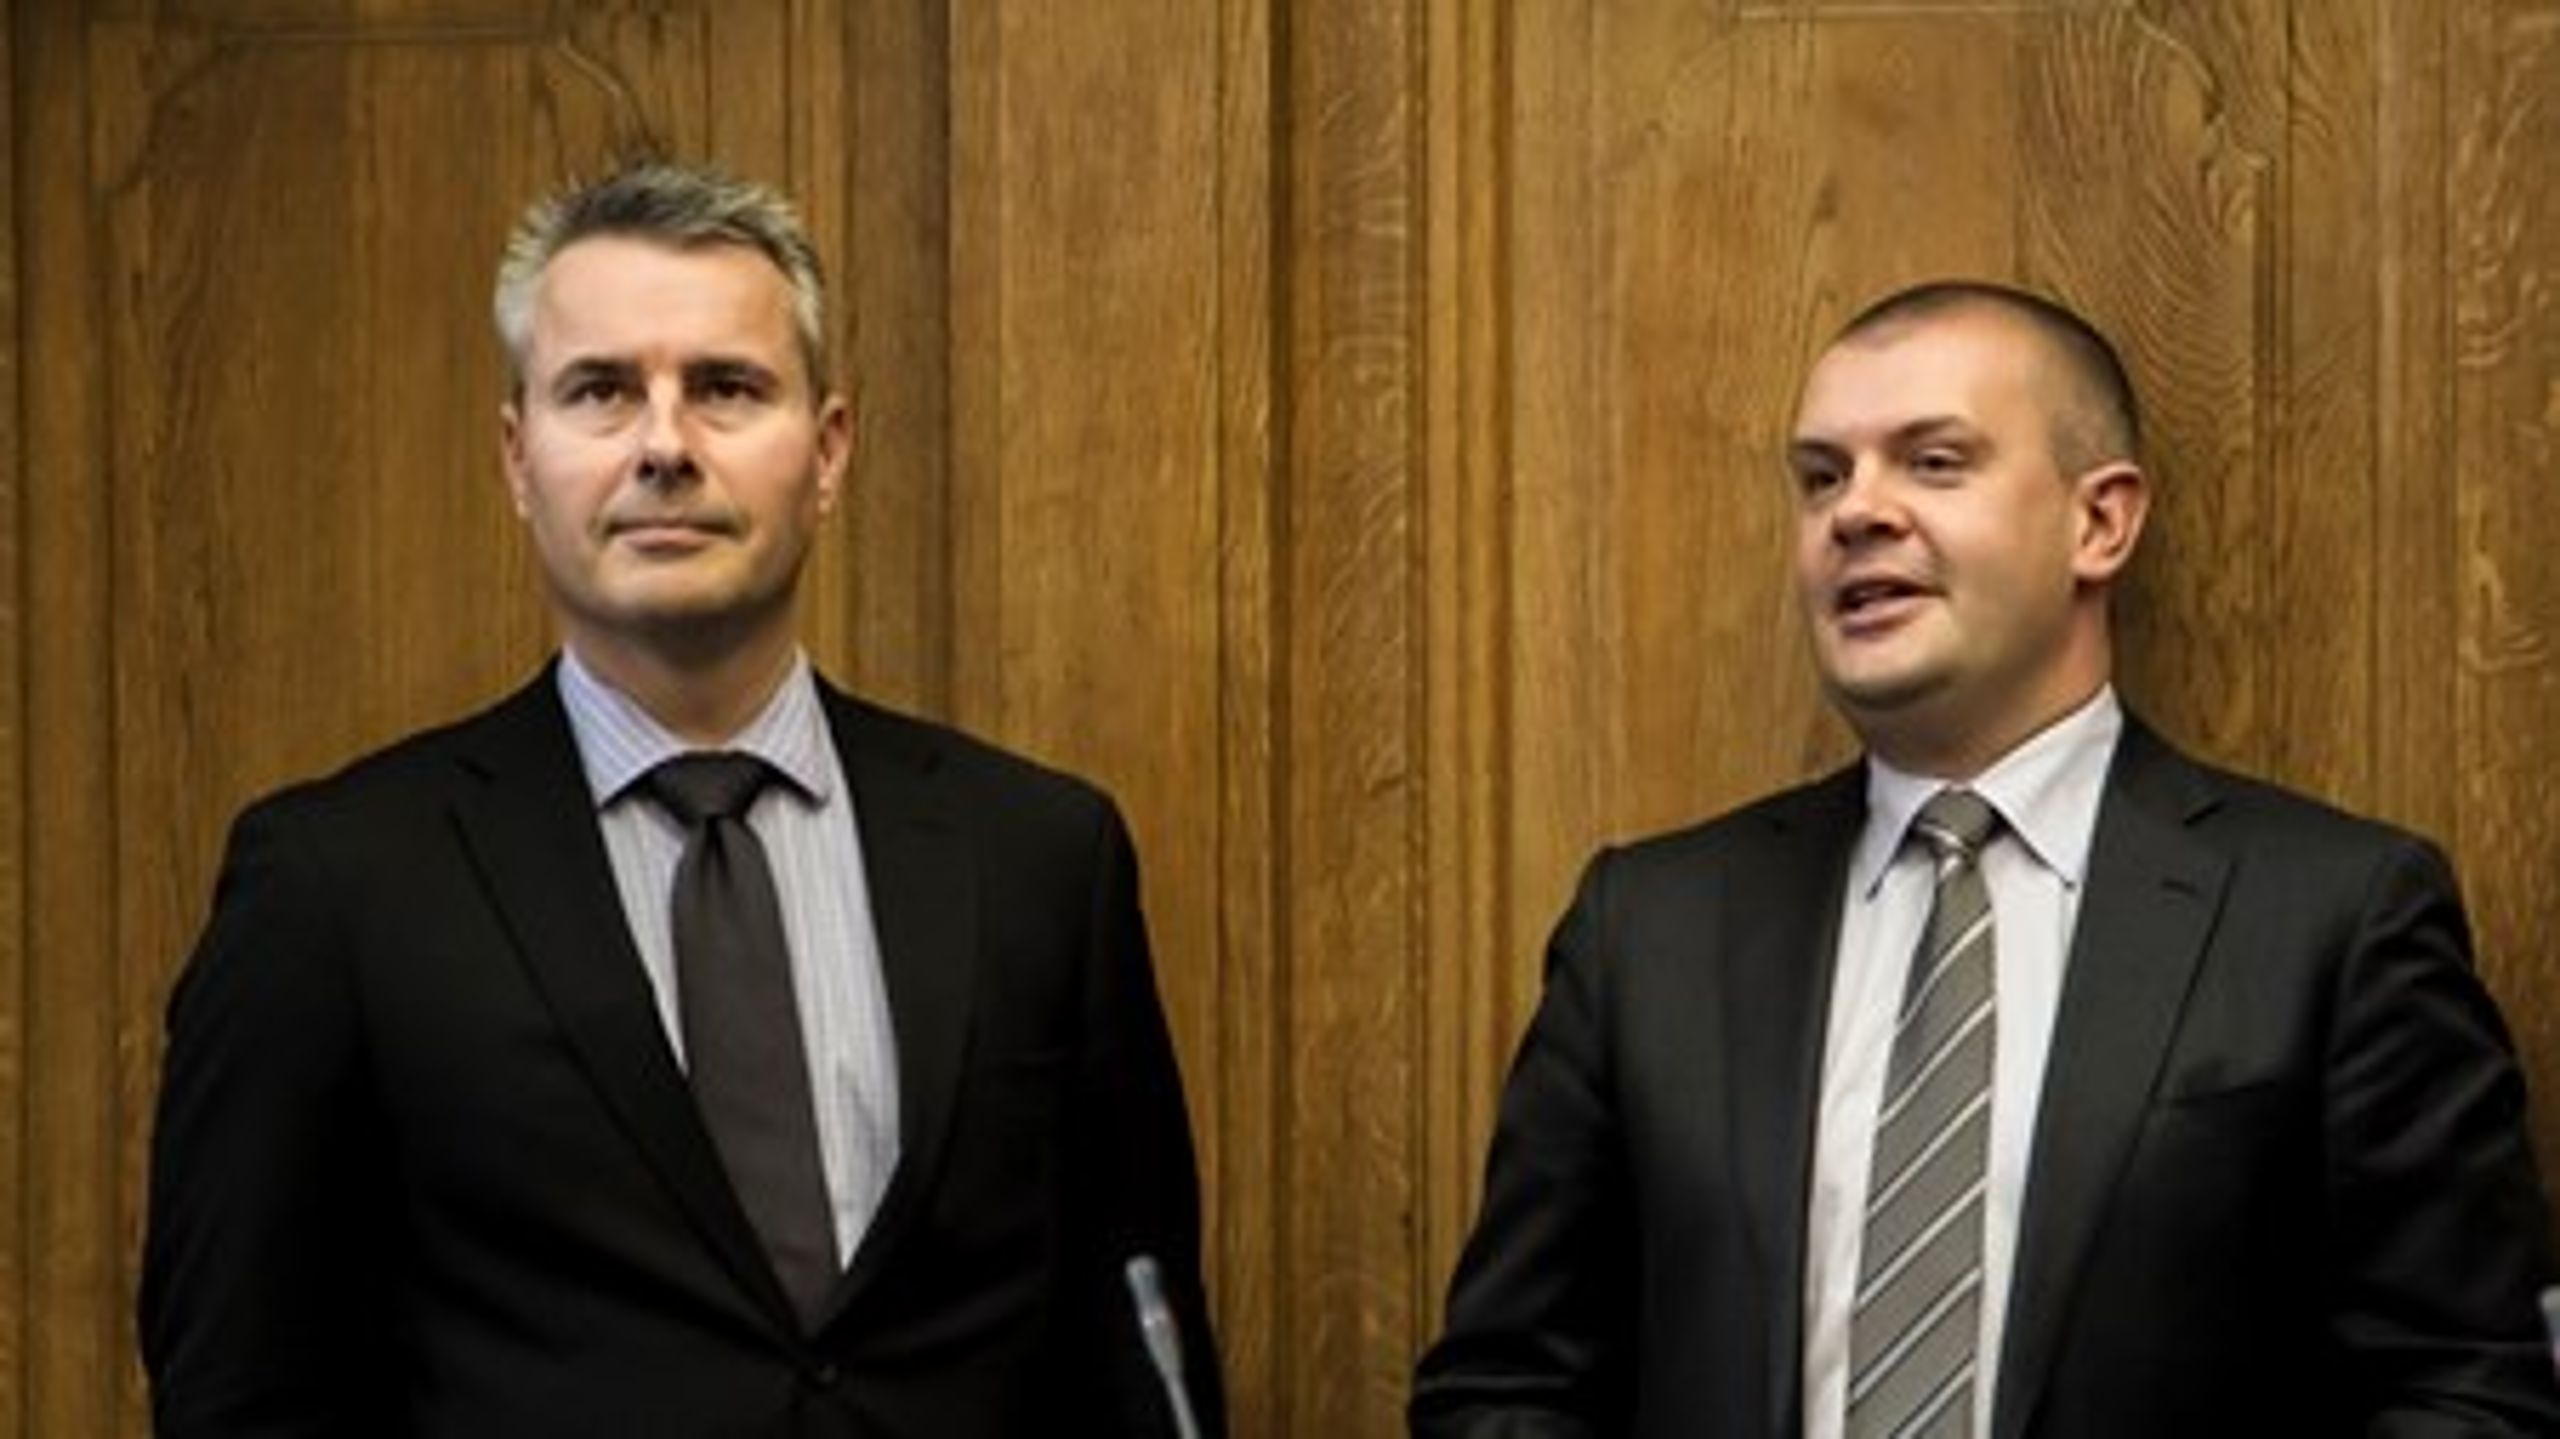 Erhvervs- og vækstminister Henrik Sass Larsen og finansminister Bjarne Corydon har sammen med deres ministerkolleger fremlagt alle regeringens vækstinitiativer.